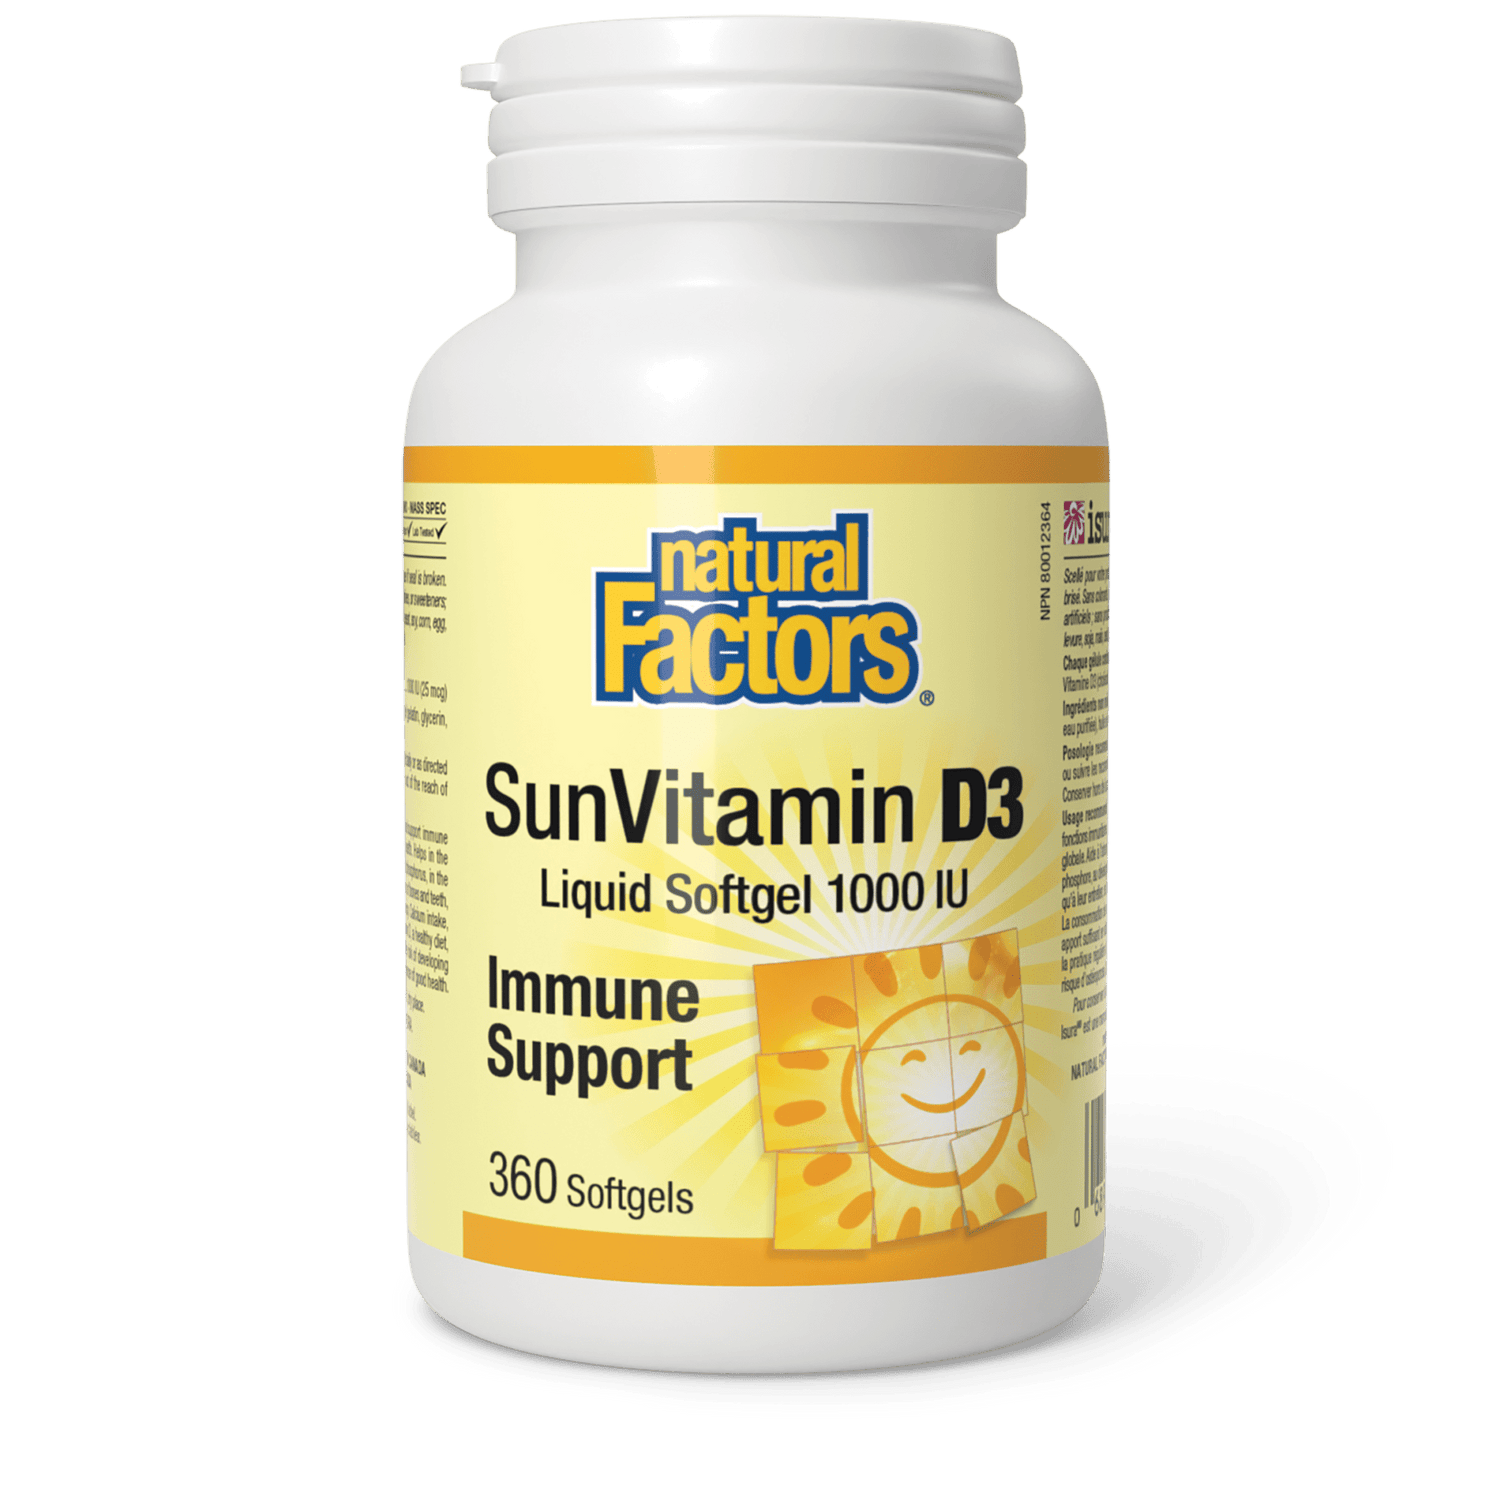 SunVitamin D3 Softgels 1000 IU, Natural Factors|v|image|1057